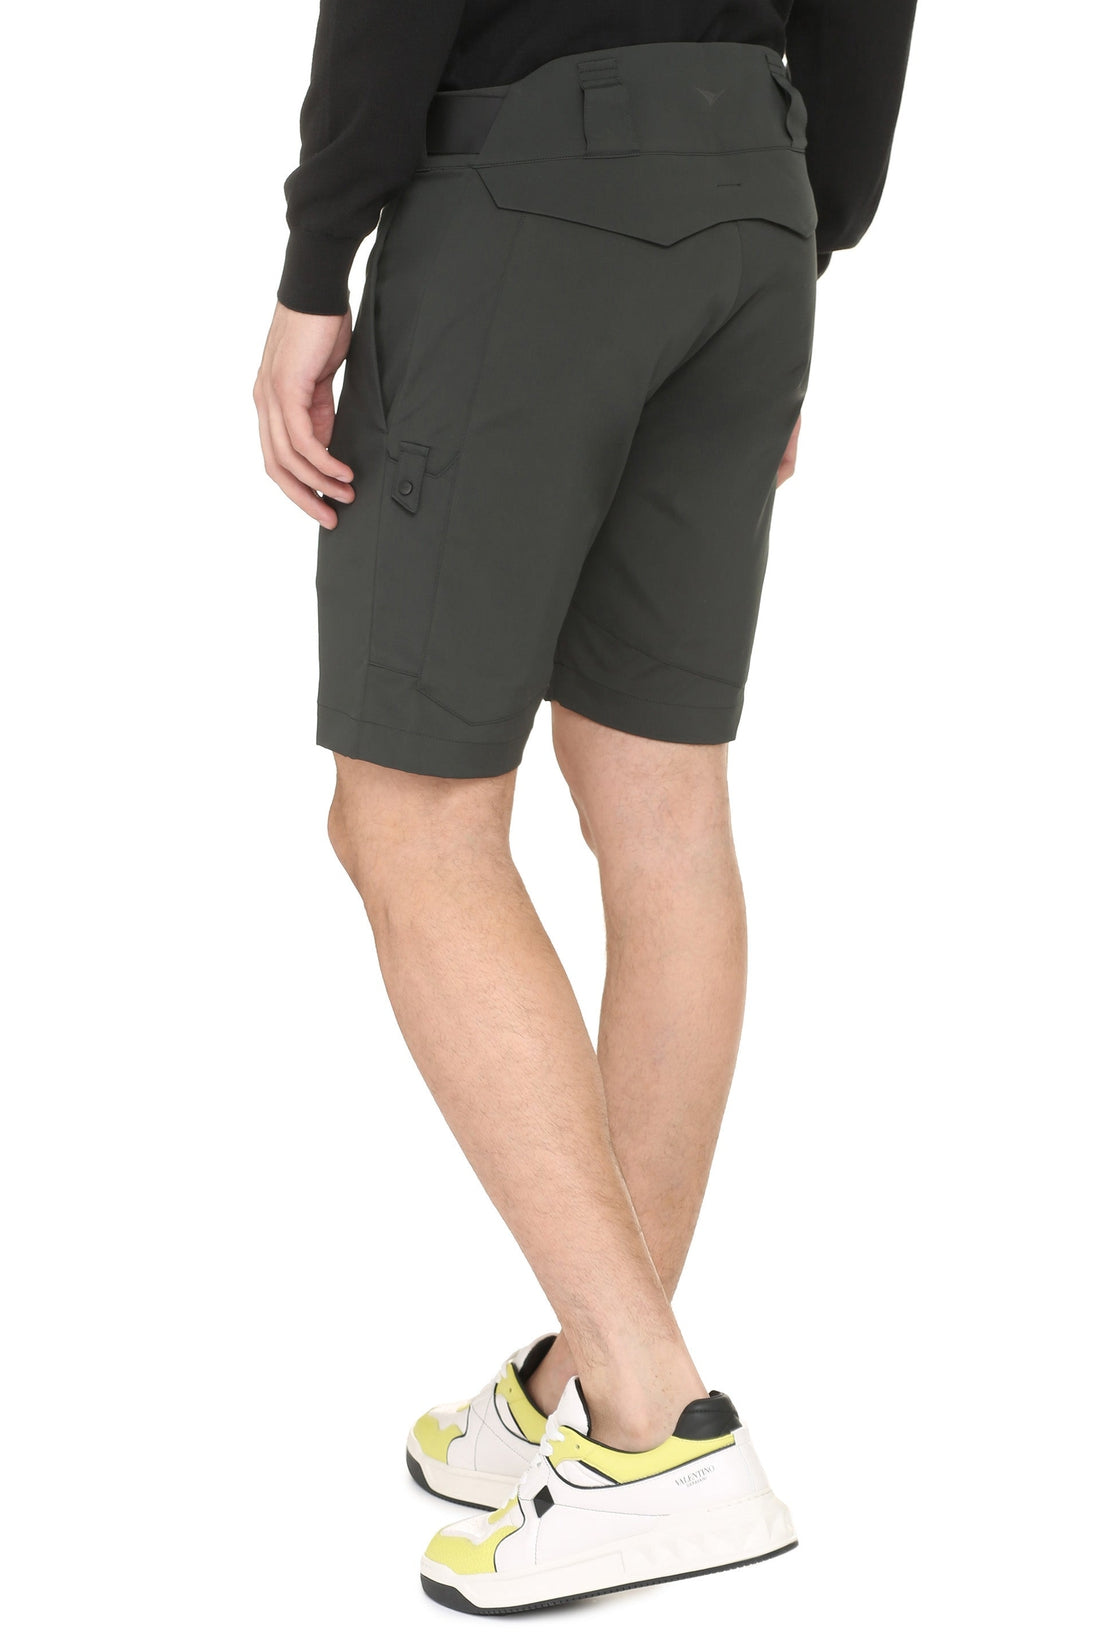 Sease-OUTLET-SALE-Cotton shorts-ARCHIVIST